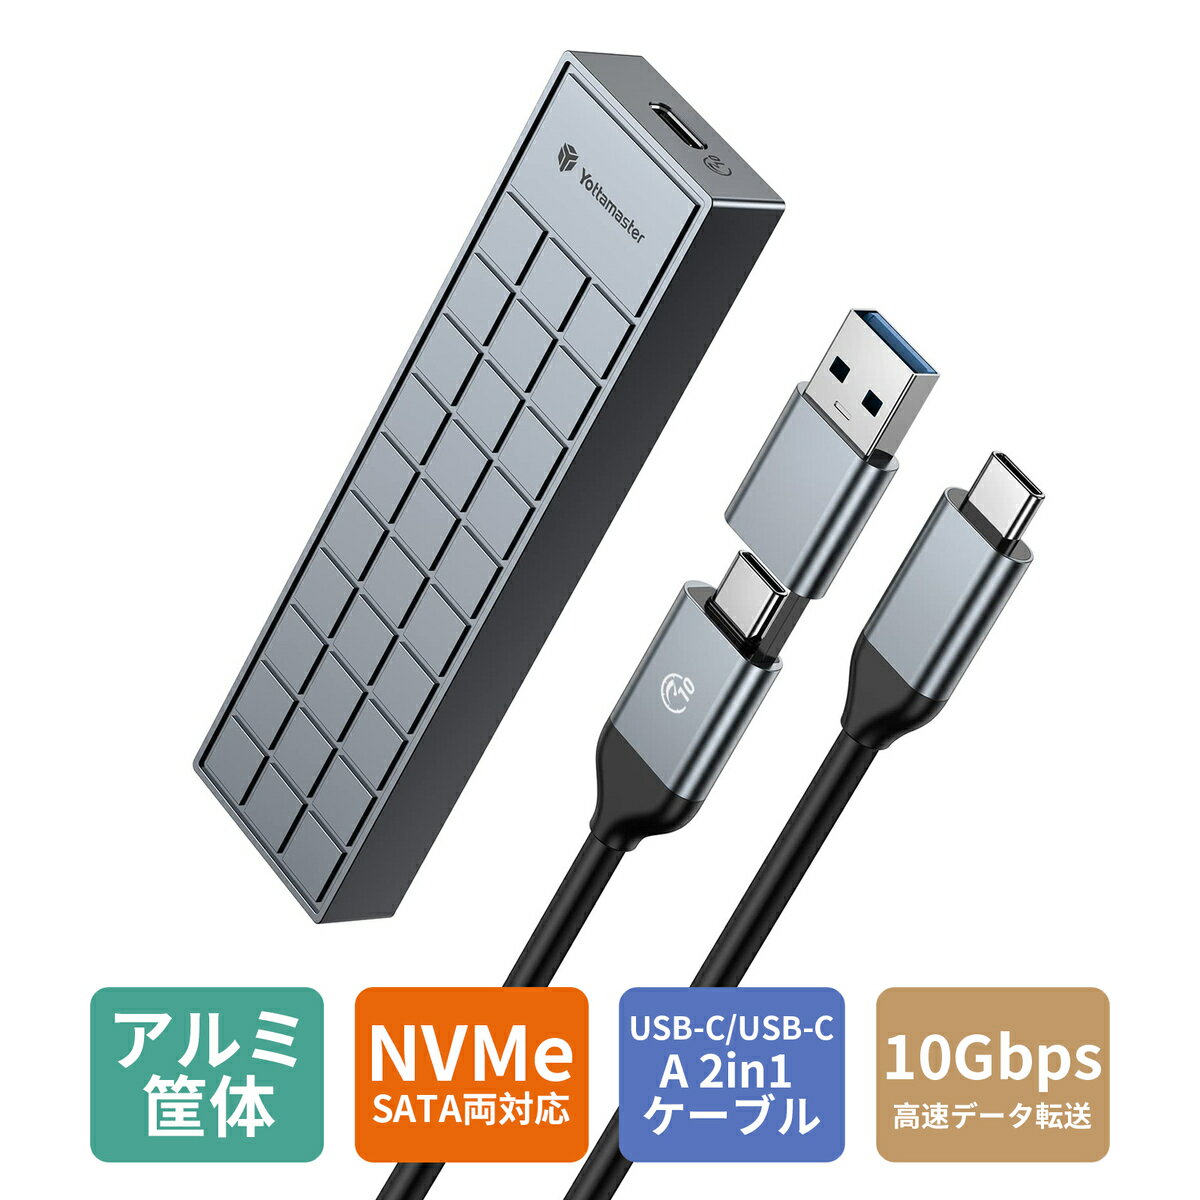 Yottamaster M.2 SSD 外付けケース NVMe対応 M.2 SSD ケース USB3.1 Gen2 10Gbps高速転送 UASP&Trim対応 アルミ製 M.2 SSD 外付け エンクロージャ グレー/シルバー/ロースゴールド